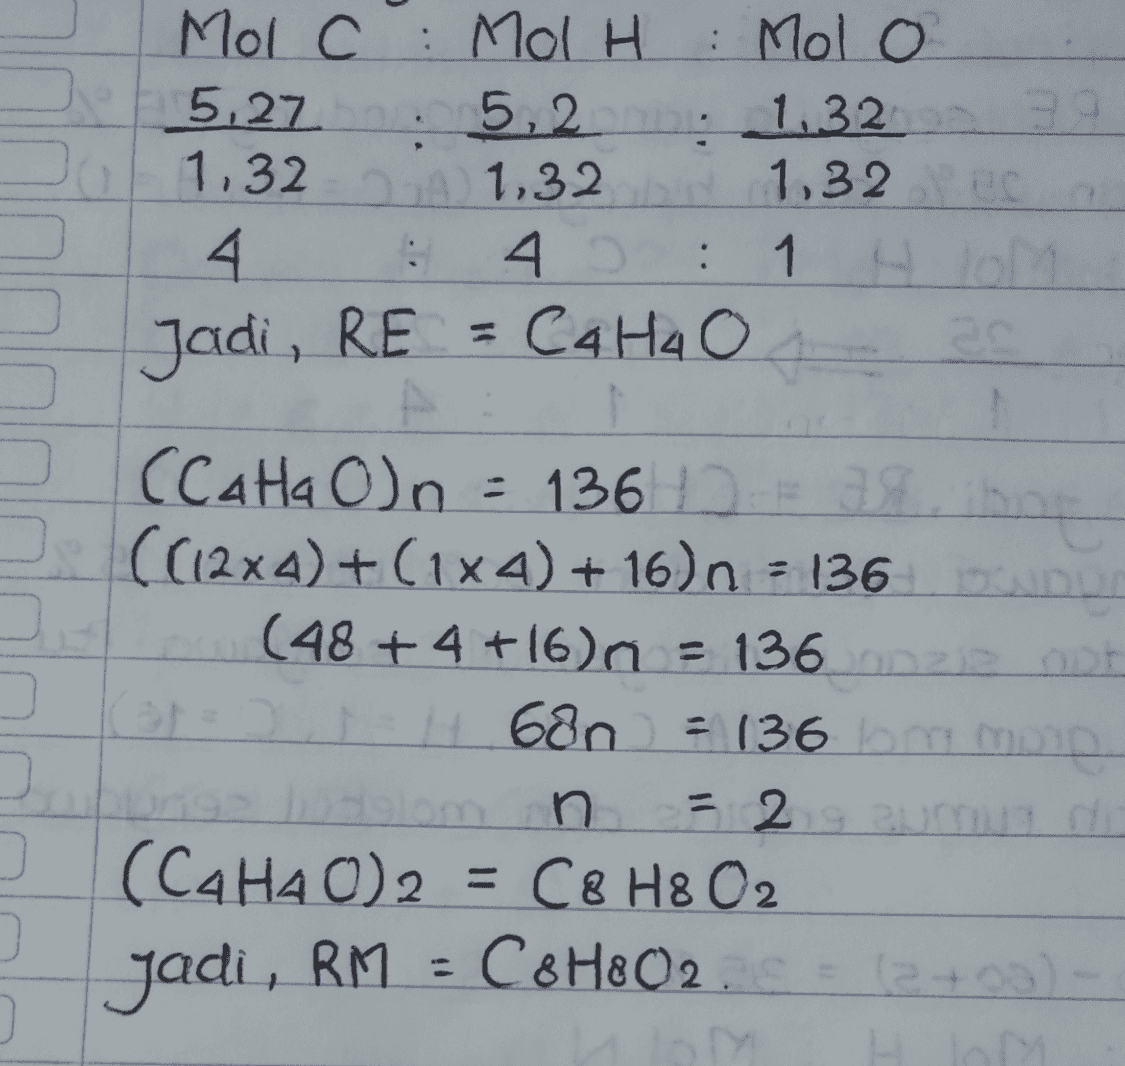 Mol C: Mol H : Molo 5,27 5,2 1.3239 1.32 2A 1,32 1,32 lec 4 4 : : 1 lo Jadi, RE = C4 H4 o . (Cata O)n = 136 10 38. ((12x4)+(1x4) + 16) n = 136 (48 + 4 +16)n = 136 onze ODF 0 | H680 = 136 mm n 5 2 9 zum di (CA HAO)2 = C8 H8 O2 2 +00) Jadi, RM = C&H8O2 